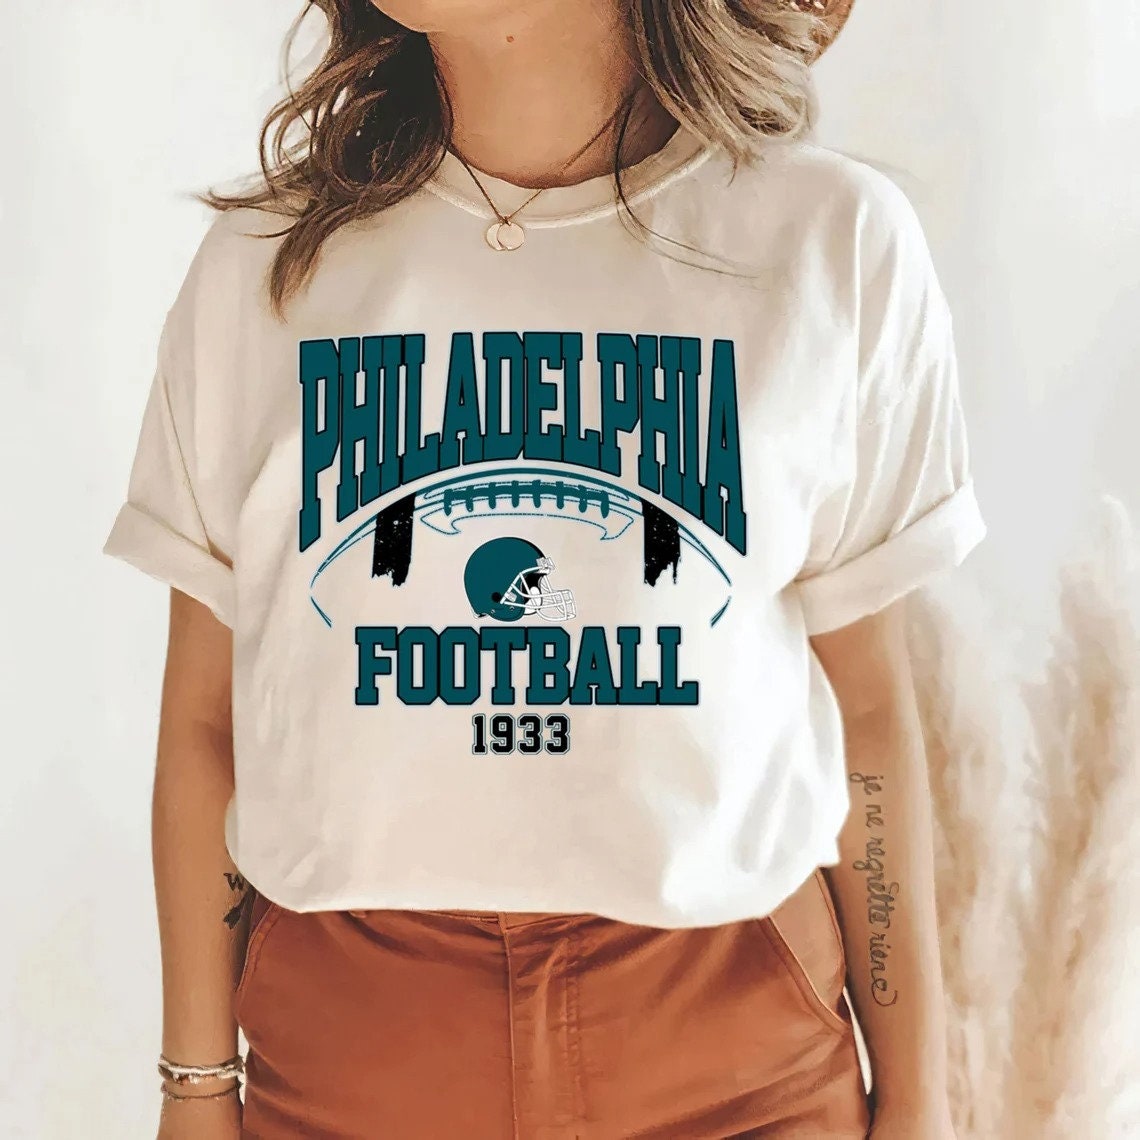 Discover Vintage 90s Philadelphia Football Est 1933 shirt, Philadelphia Football , Philadelphia Football fans gift, Philadelphia Champs shirt